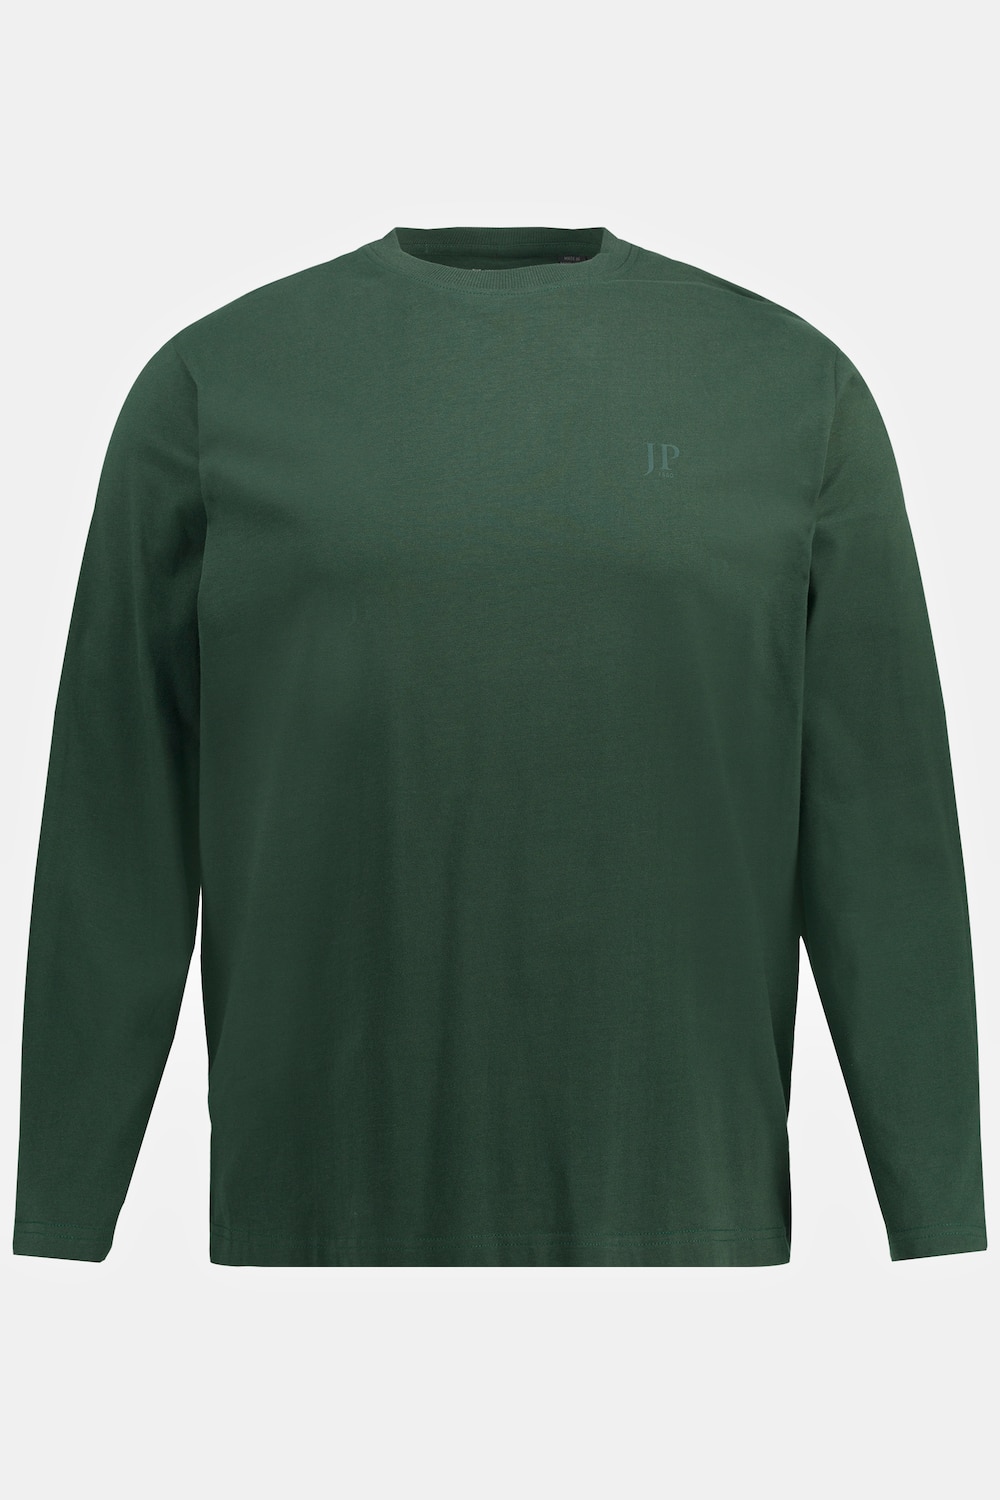 Grote Maten shirt, Heren, groen, Maat: 7XL, Katoen, JP1880